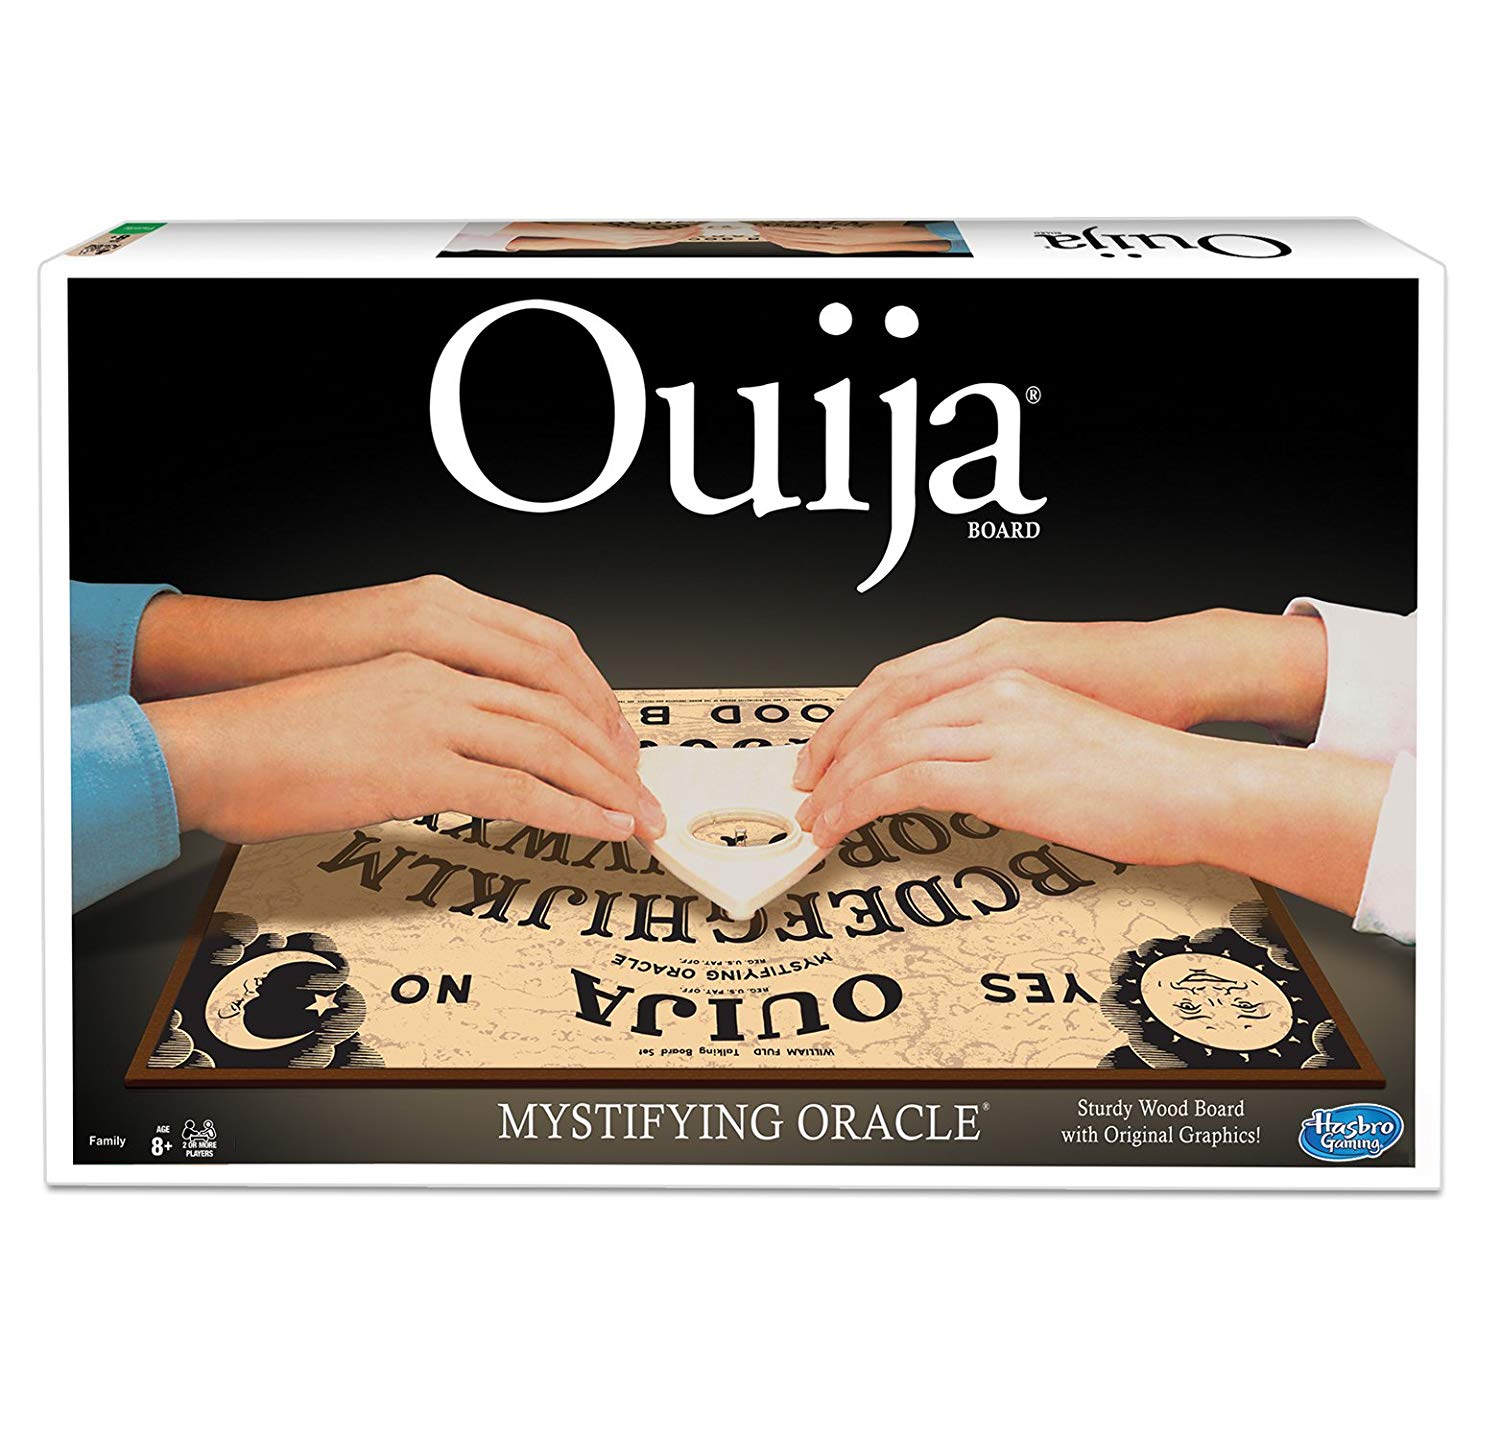 სამაგიდო თამაში კლასიკური უიჯა (Classic Ouija) სამაგიდო თამაში